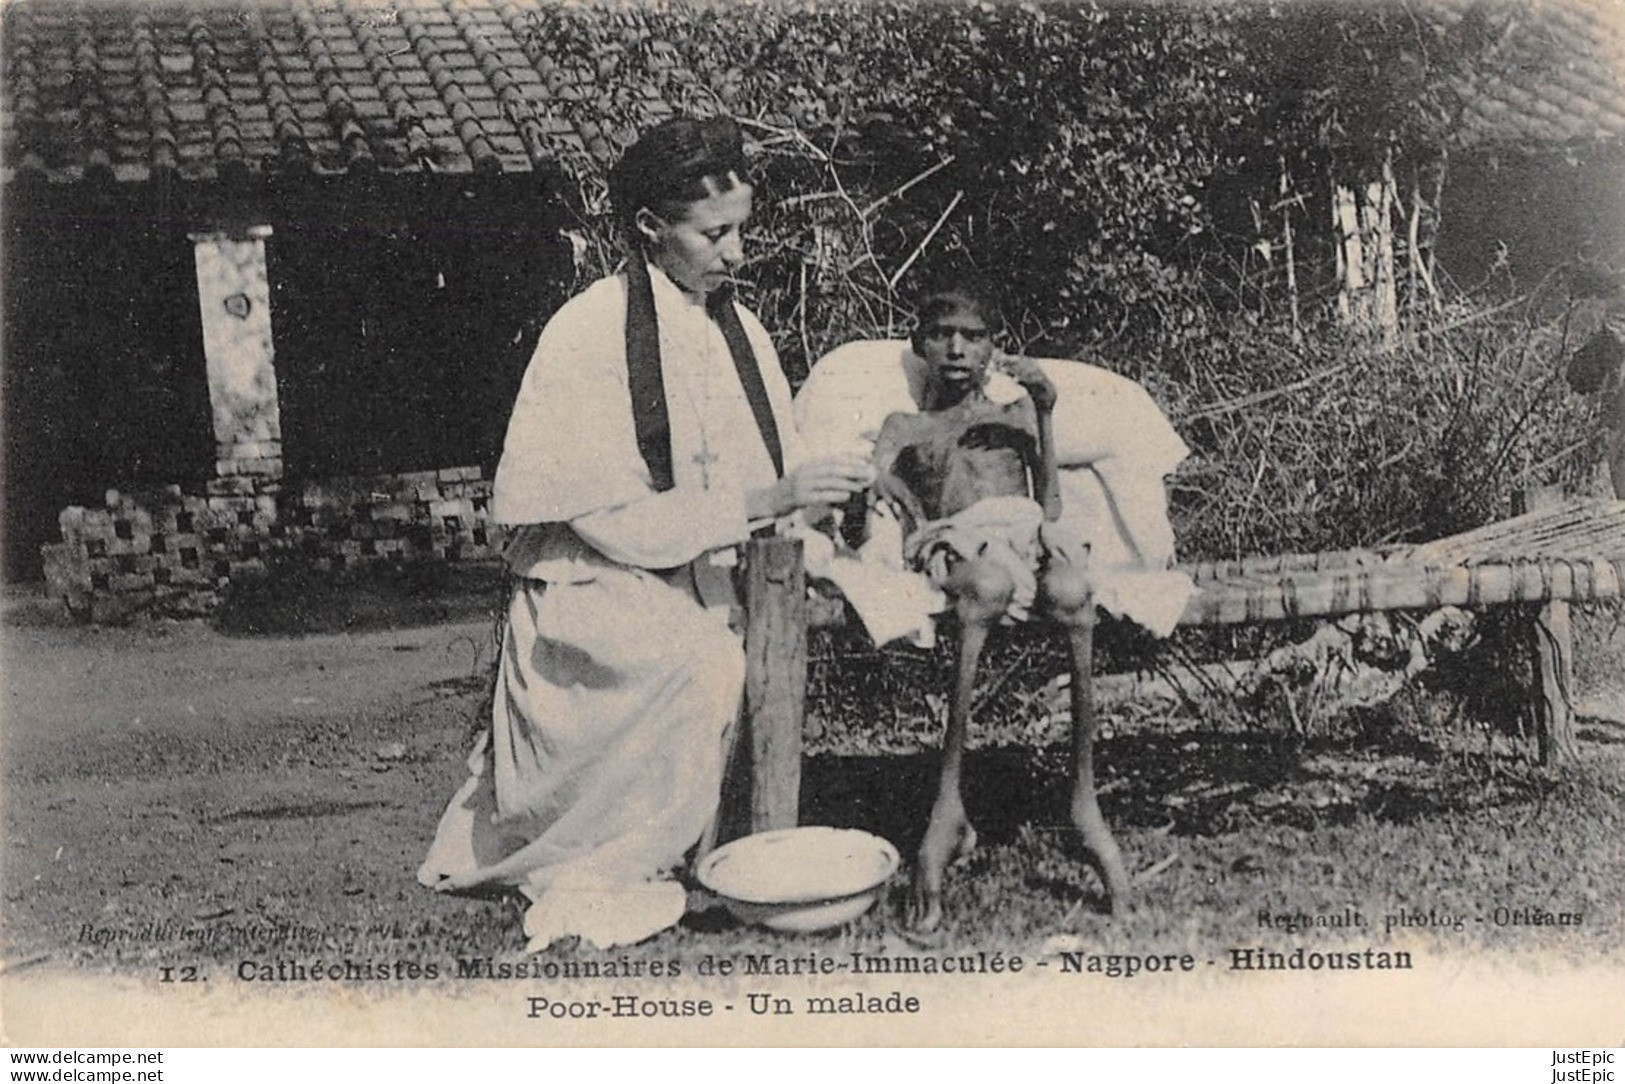 Catéchistes Missionnaires De Marie Immaculée - Nagpore - Hindoustan - Poor-house - Un Malade  Regnault Phot. Orléans Cpa - Inde